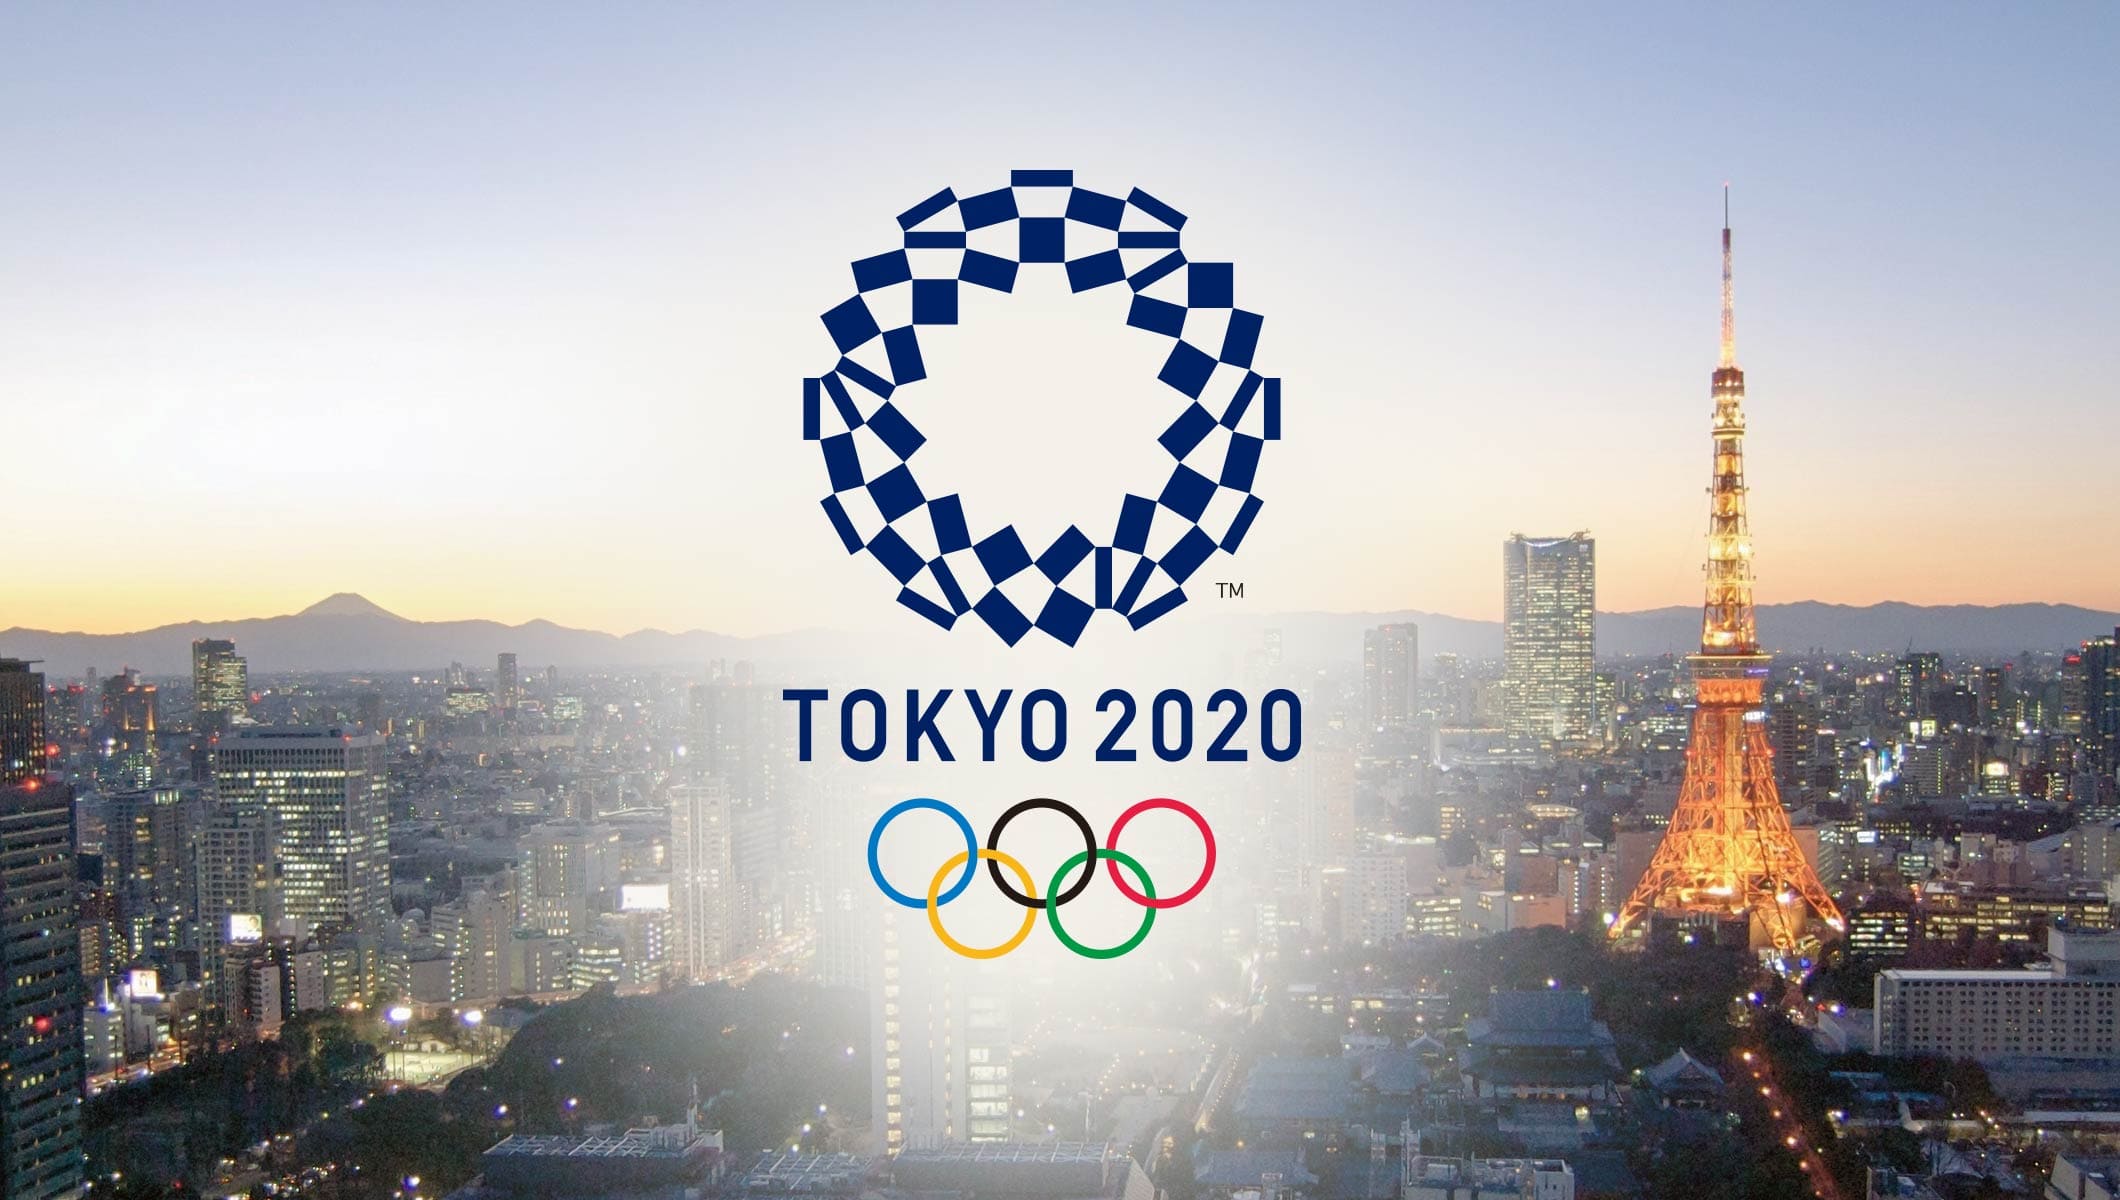  Tokio dice «no a la suspensión» de los Juegos Olímpicos